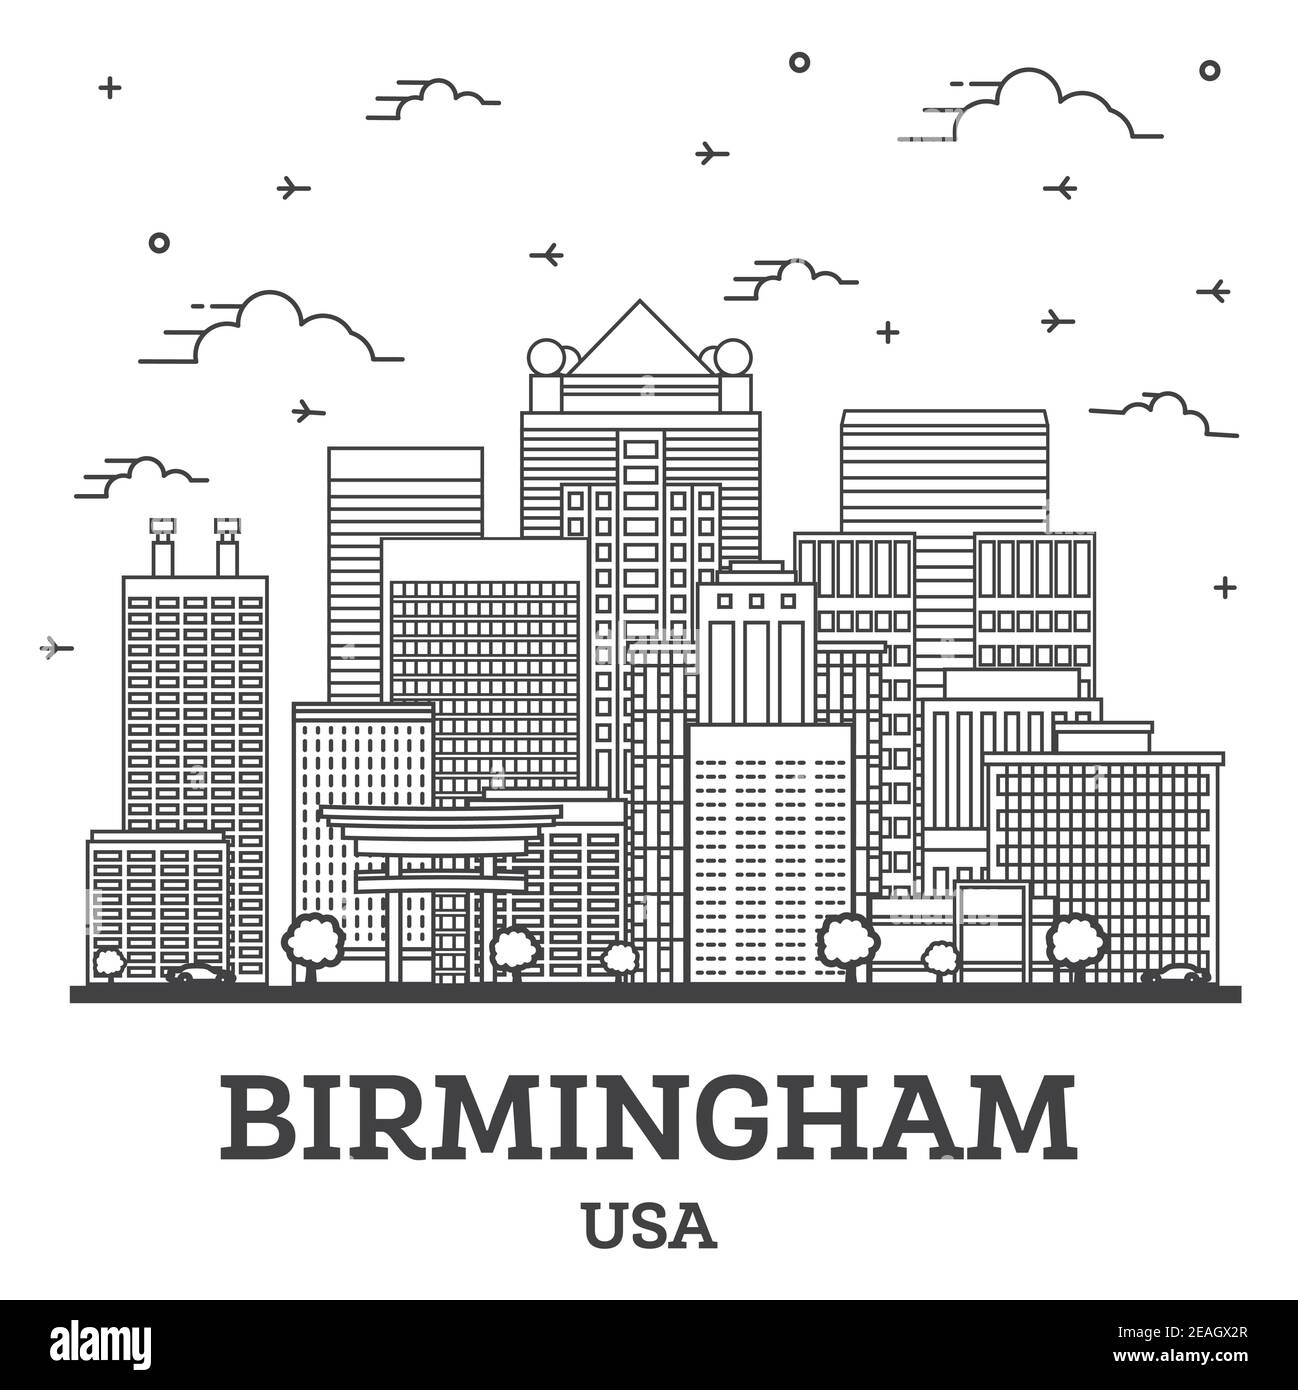 Profilo Birmingham Alabama USA City Skyline con edifici moderni isolati su bianco. Illustrazione vettoriale. Birmingham USA con monumenti storici. Illustrazione Vettoriale